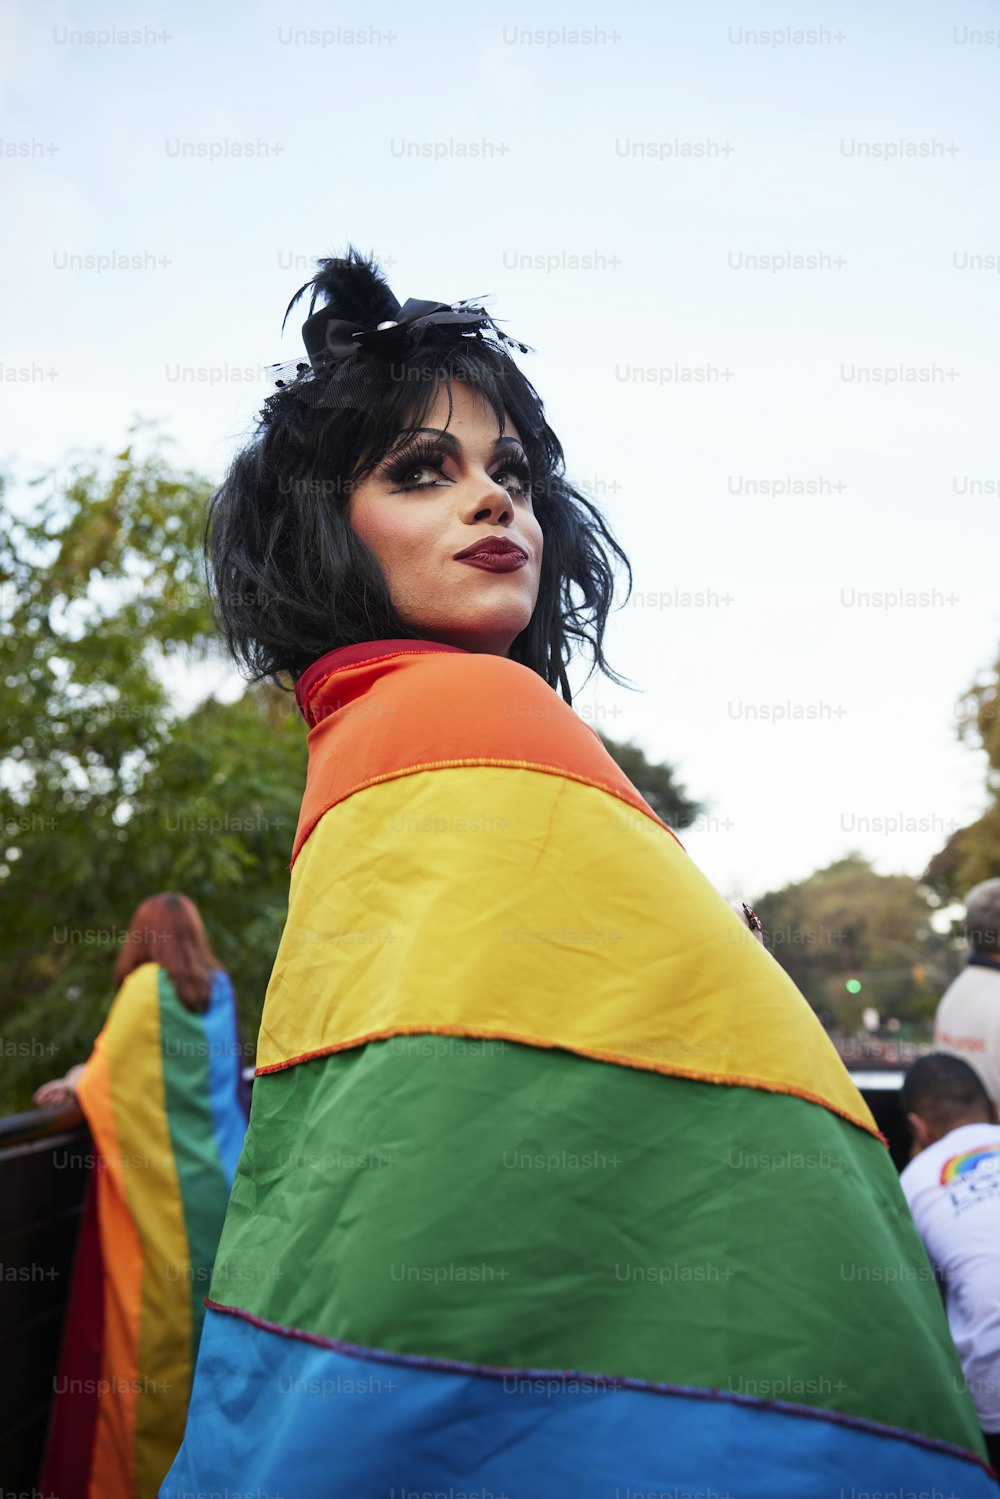 Una mujer con una chaqueta de color arco iris y cabello negro